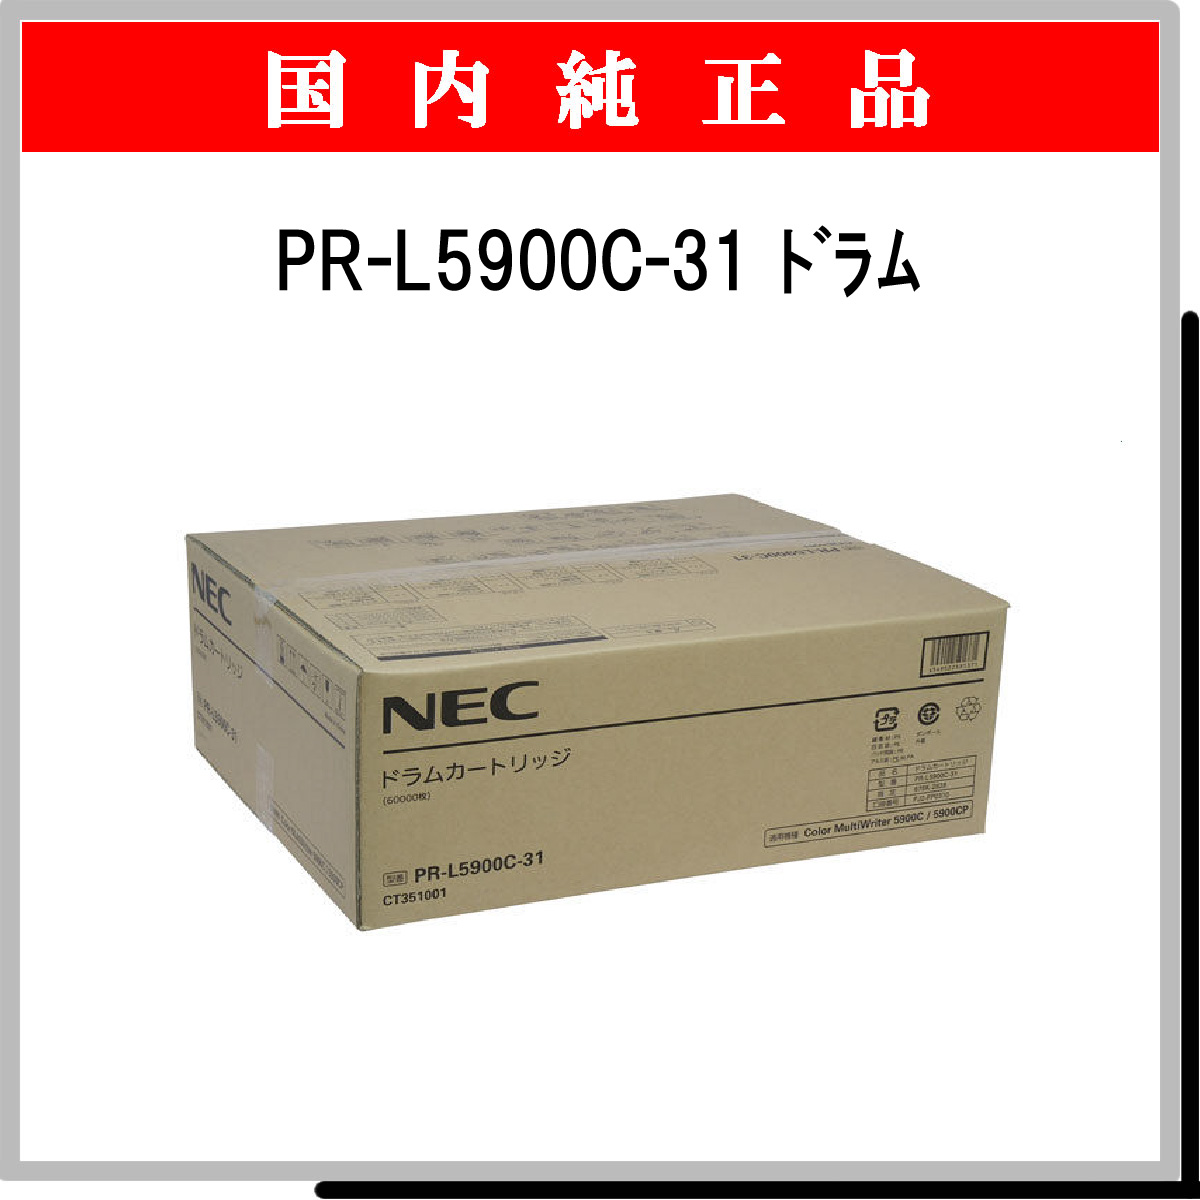 PR-L5900C-31 純正